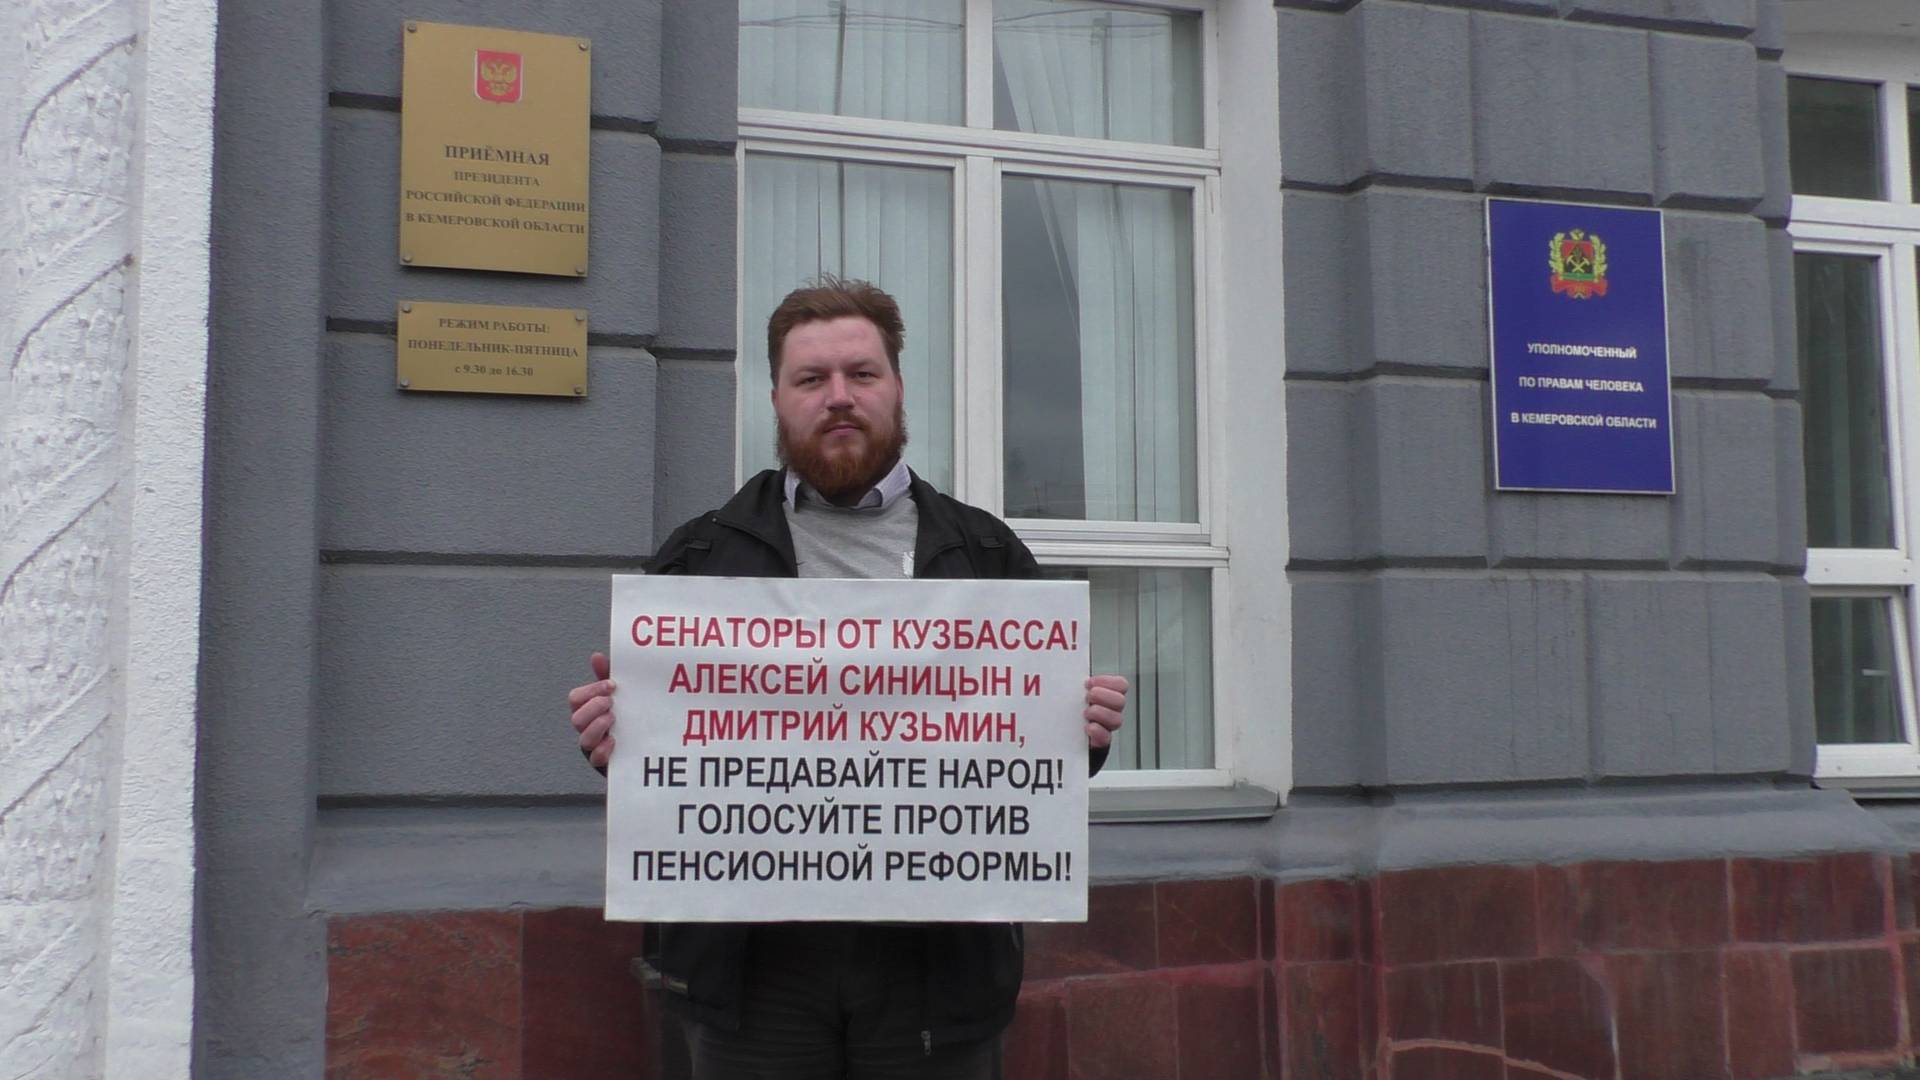 Одиночный пикет против пенсионной реформы. 03.10.2018 Кемерово